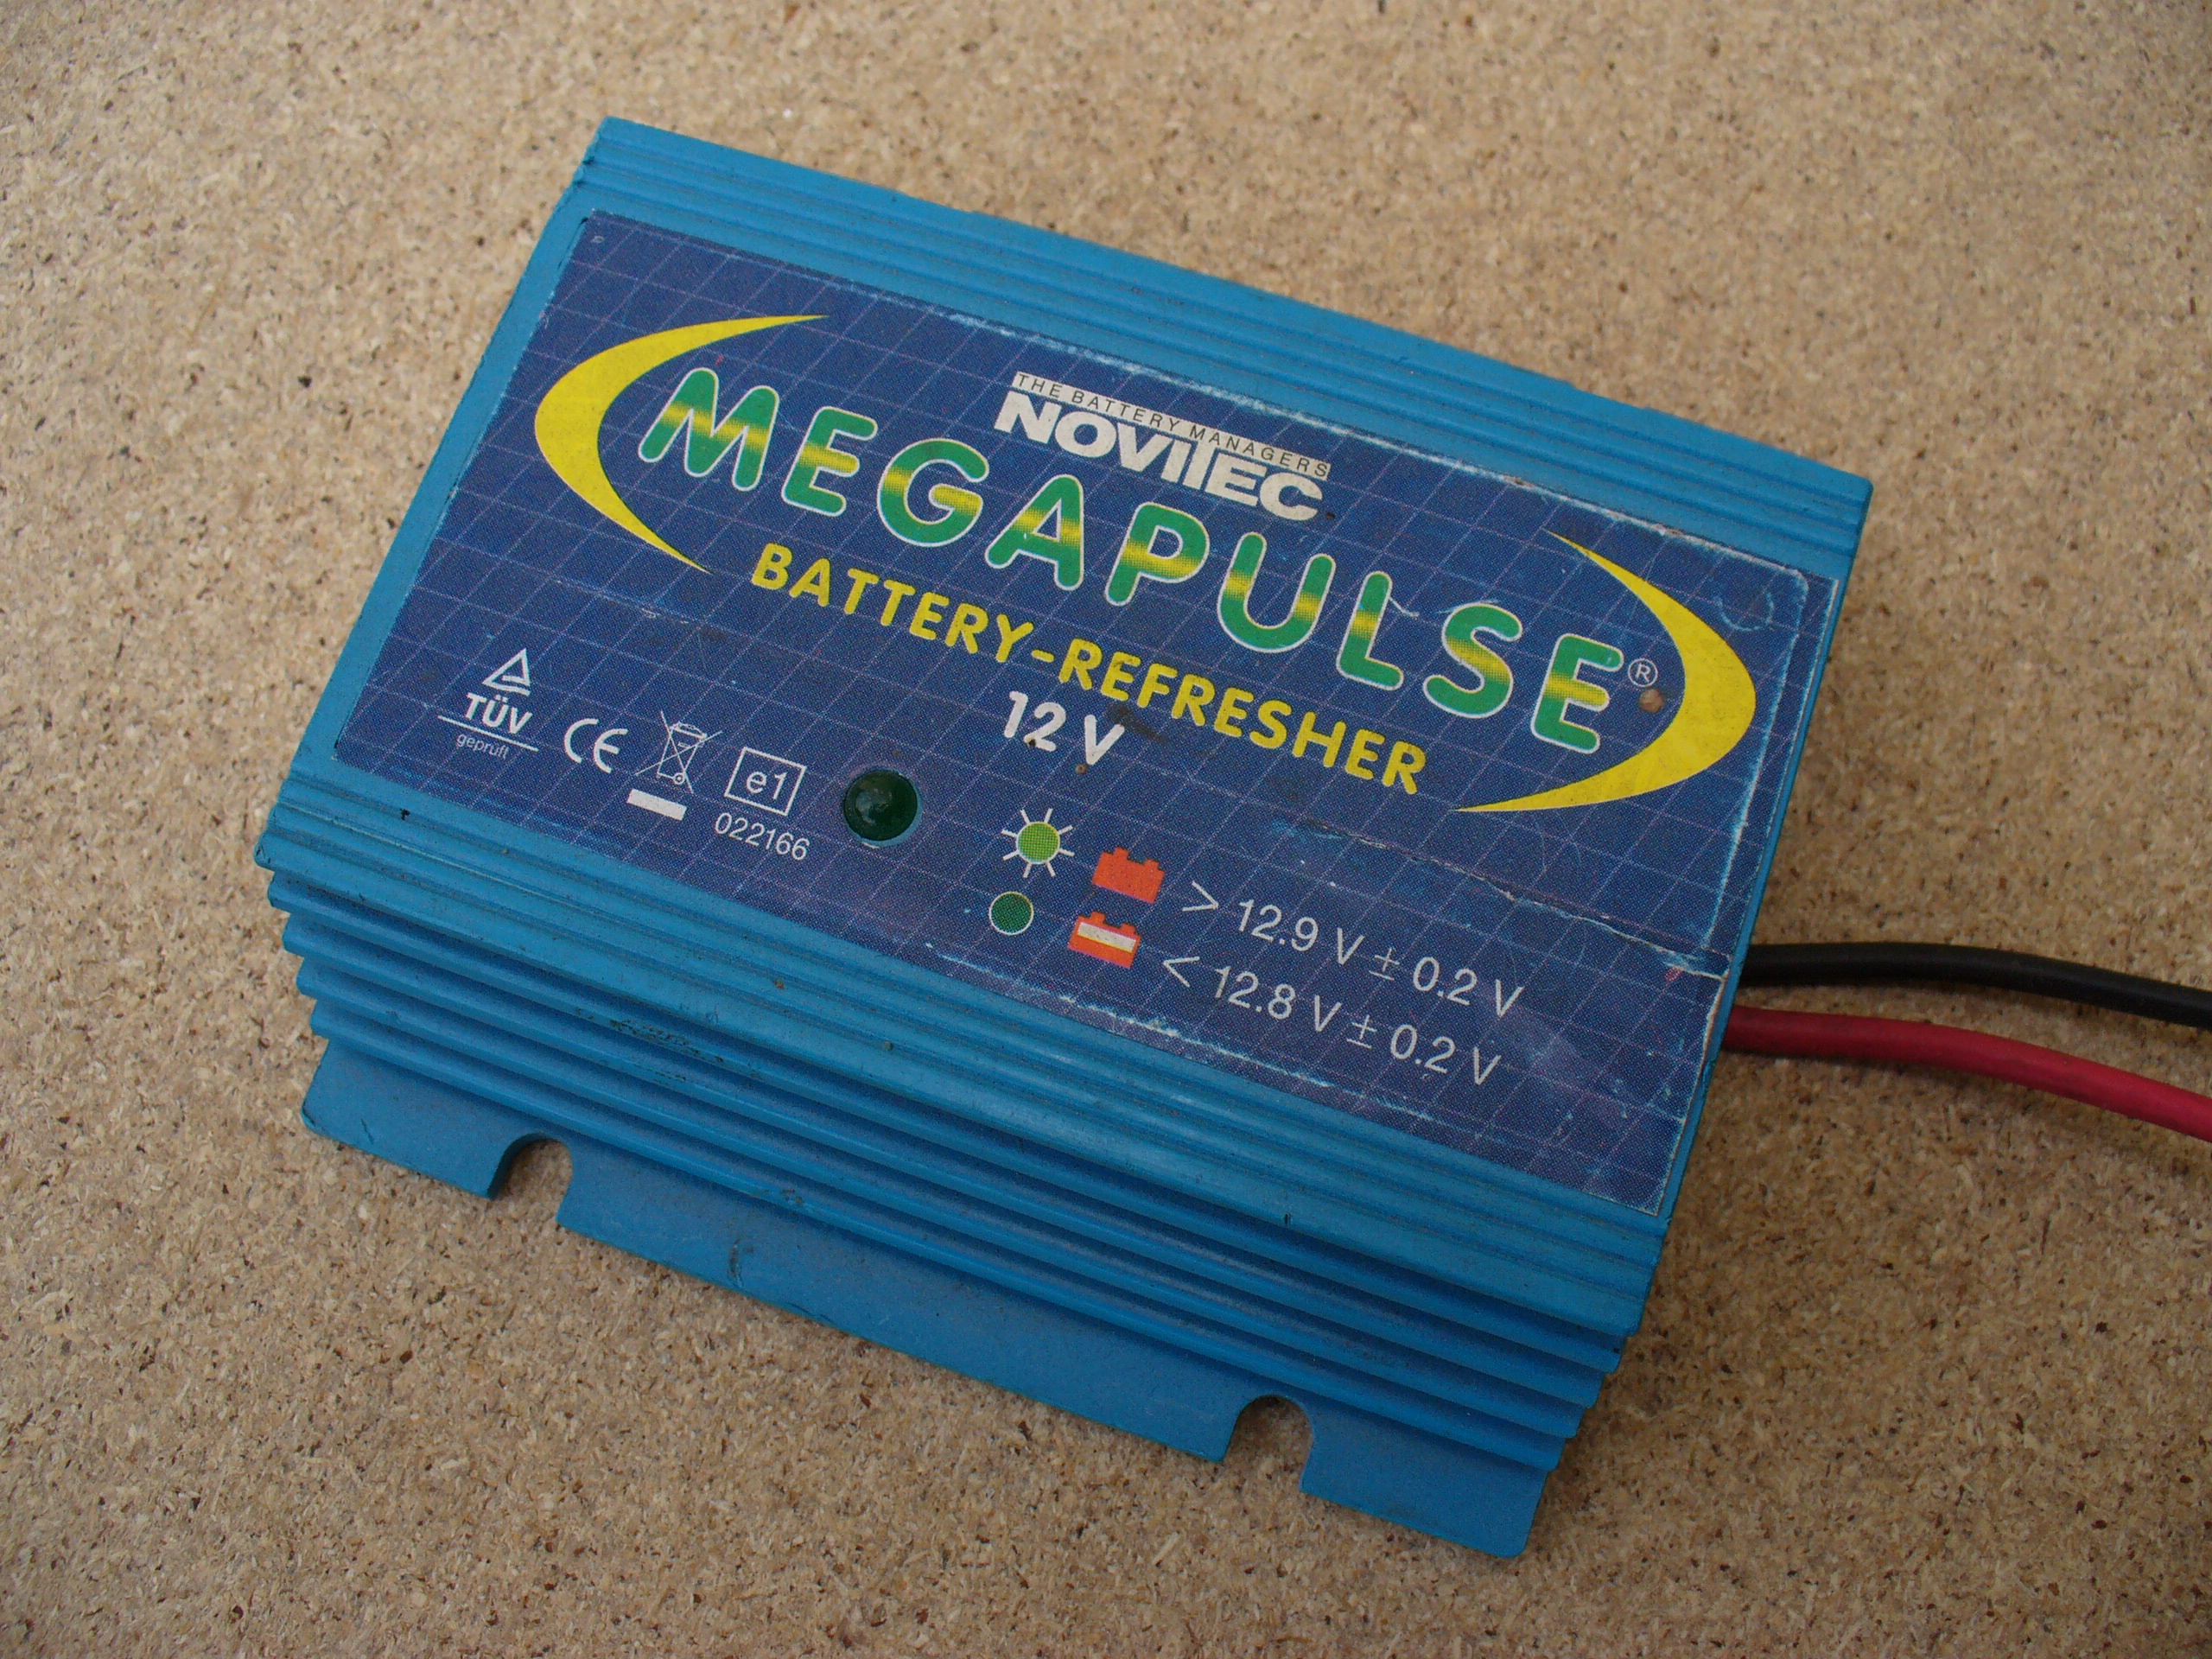 Batterie-Aktivator Megapulse 01